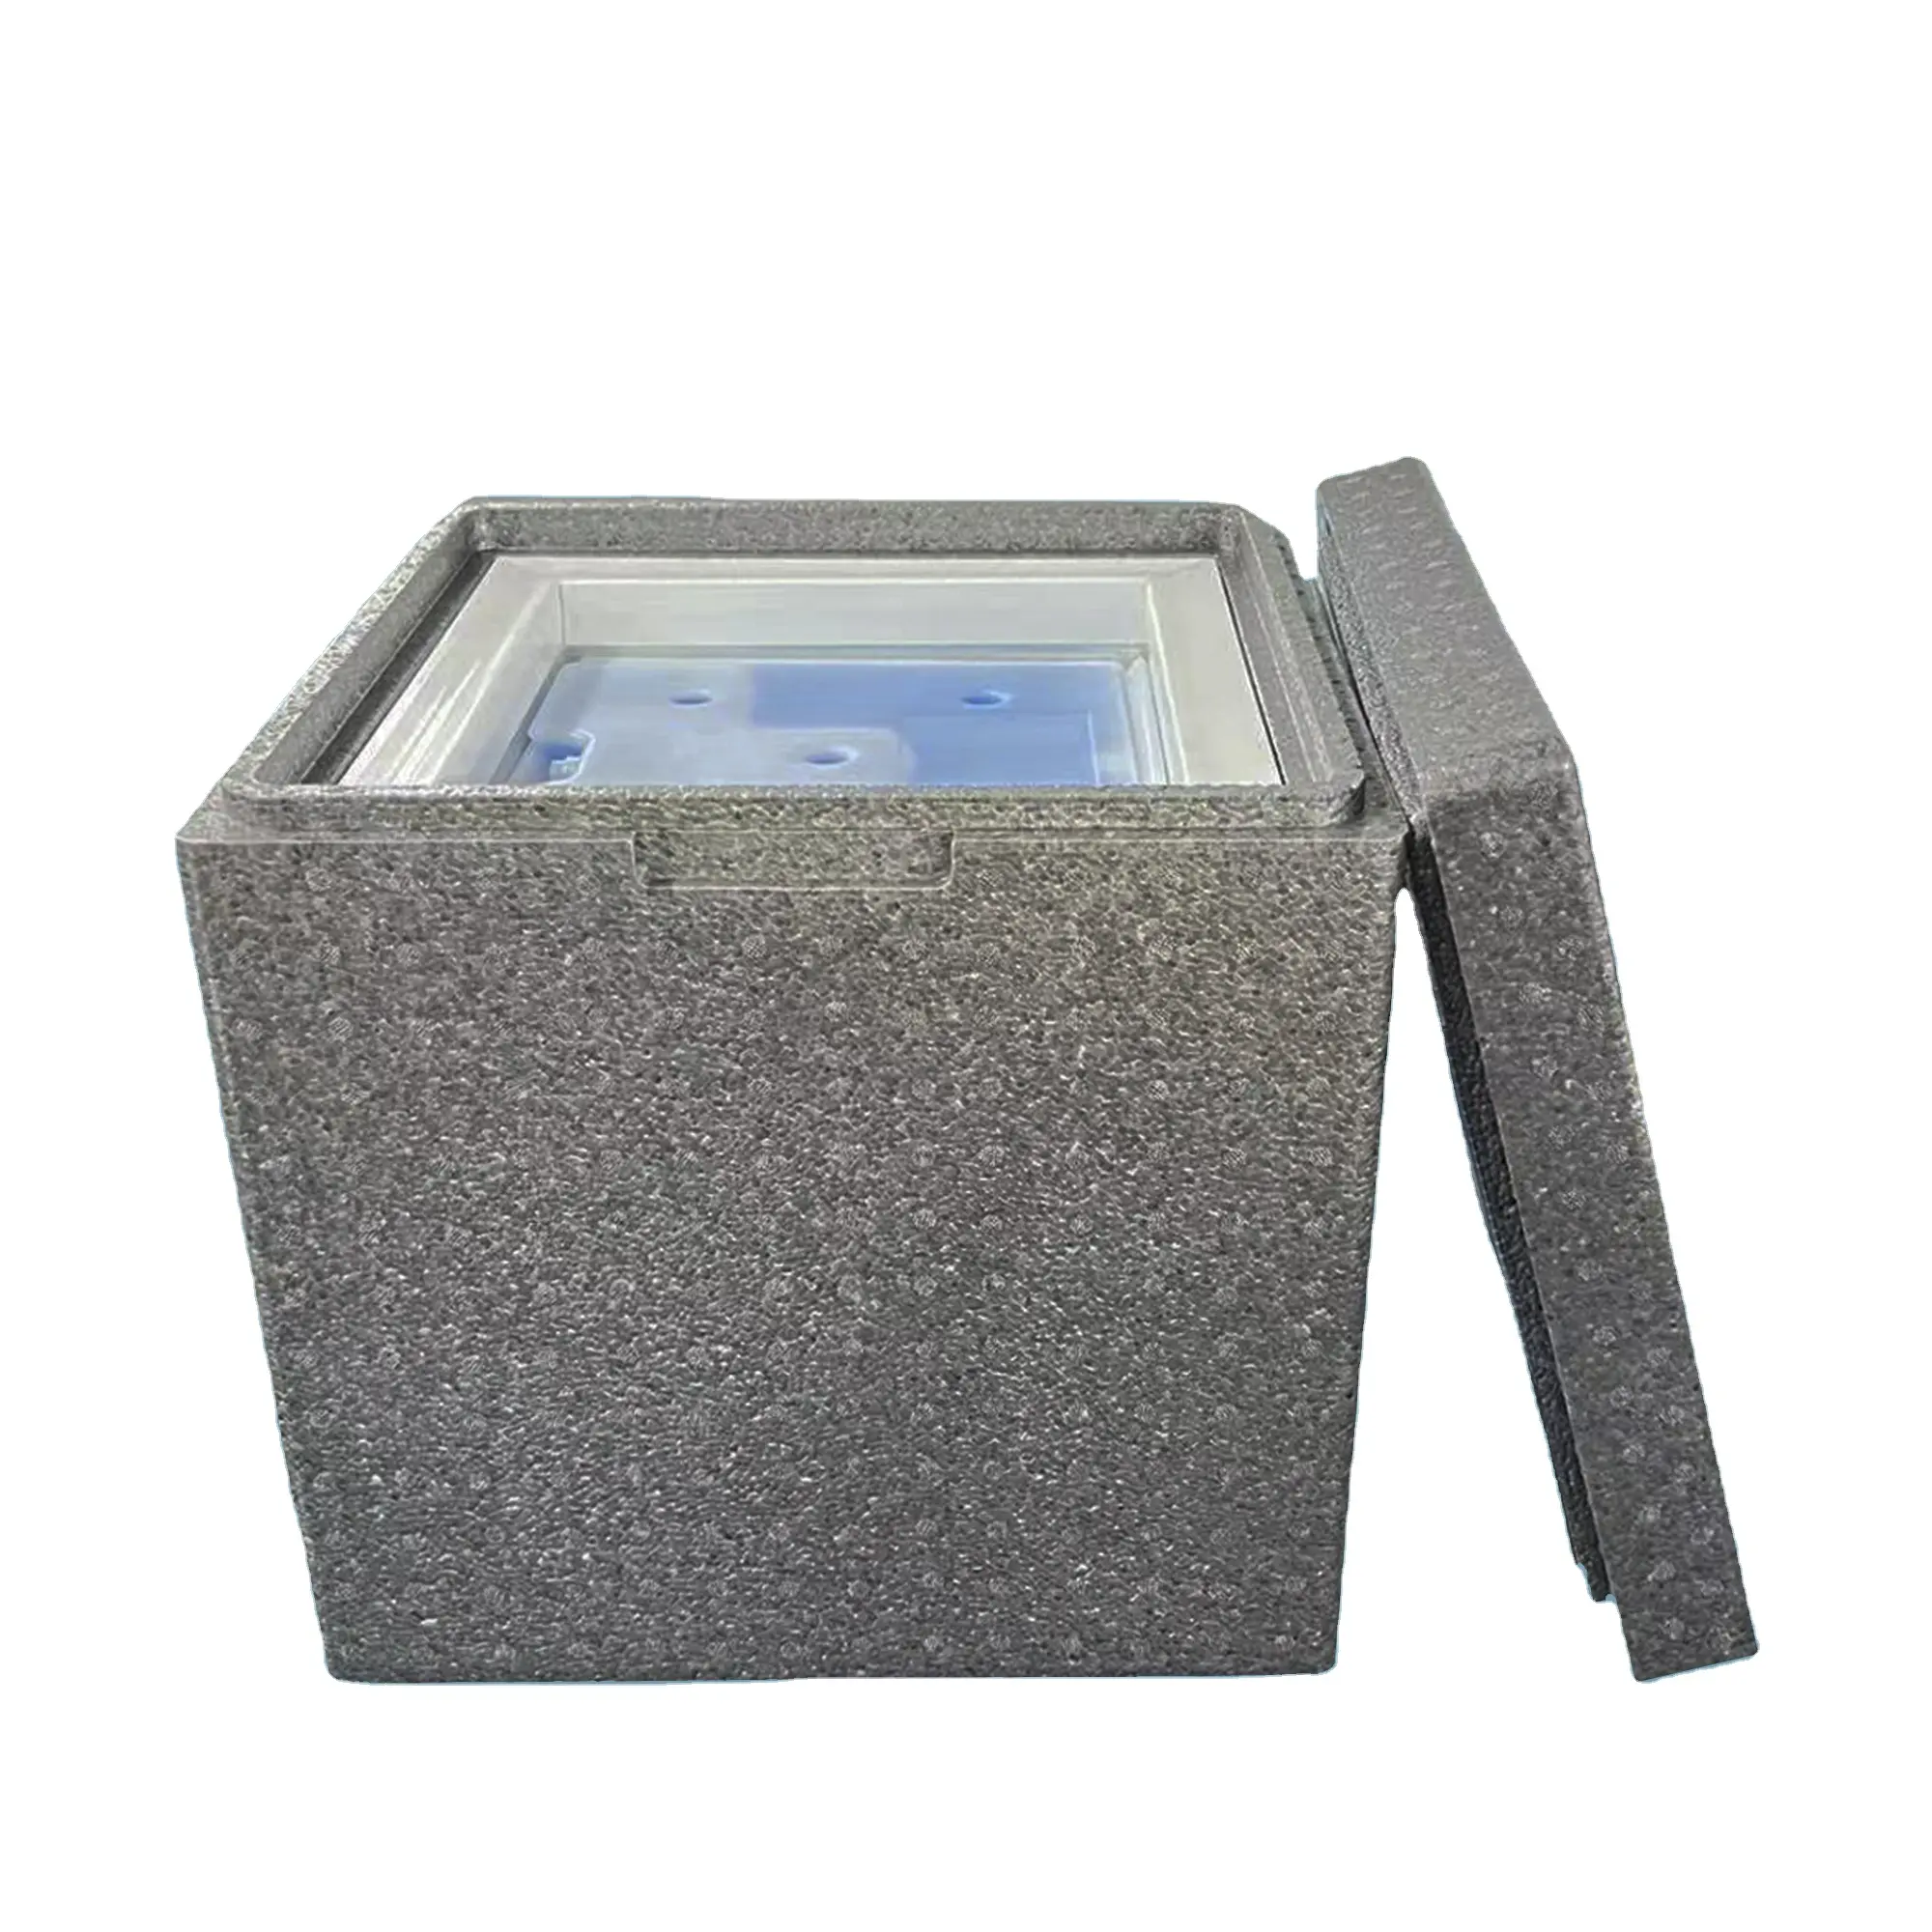 Grosir kotak pengawet panas papan insulasi vakum multifungsi menggunakan pelat isolasi vakum